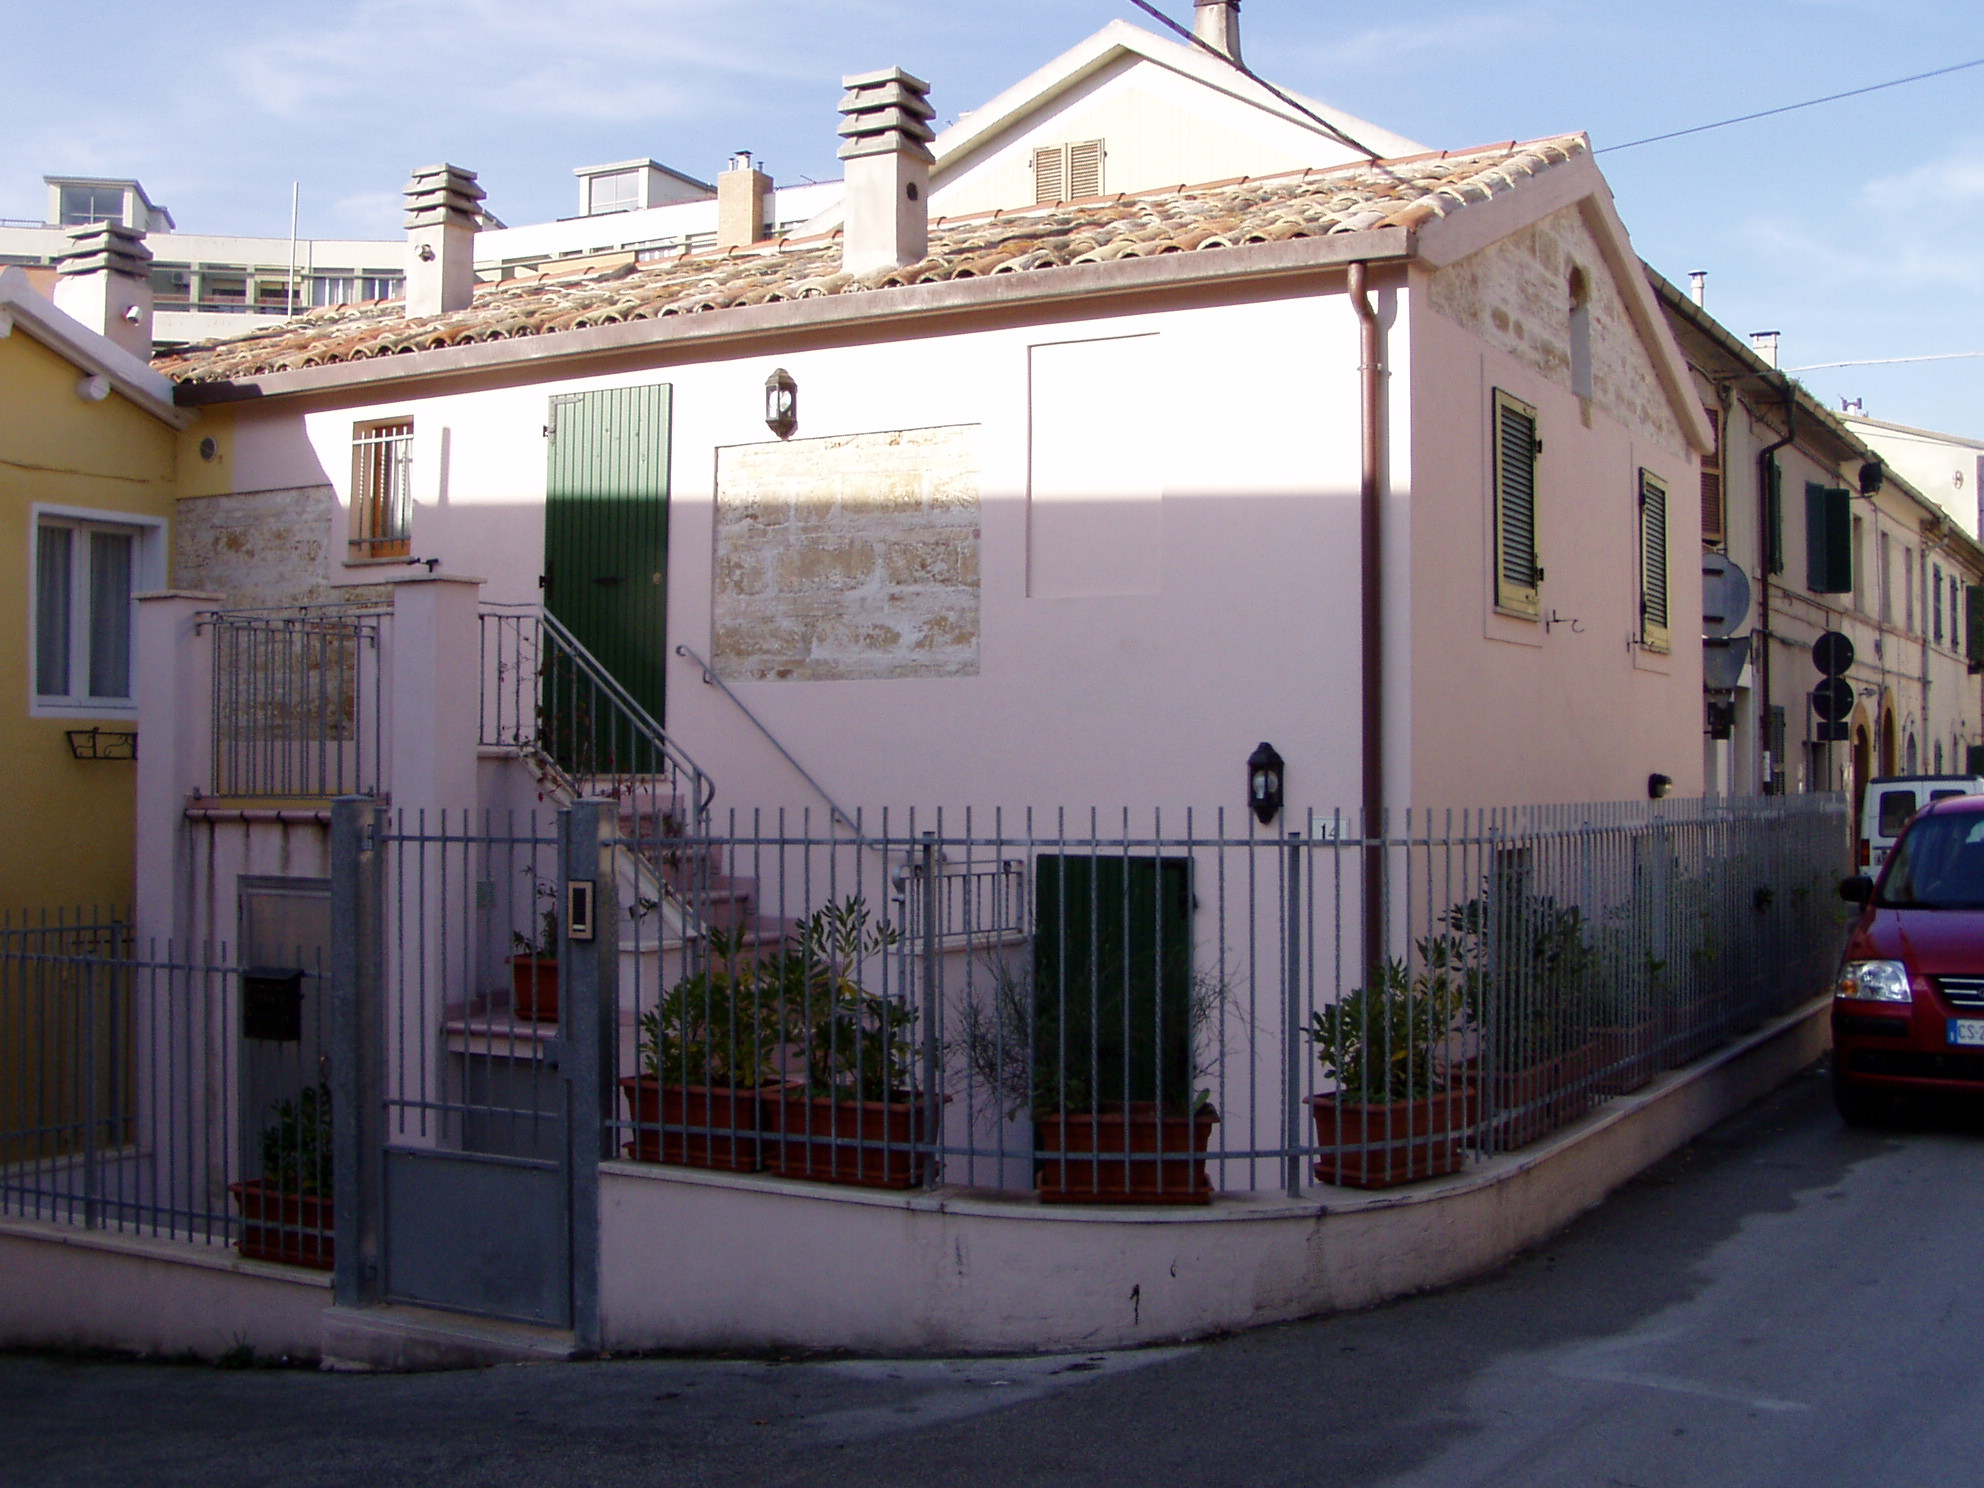 Casa con scala esterna (casa in linea) - Ancona (AN) 